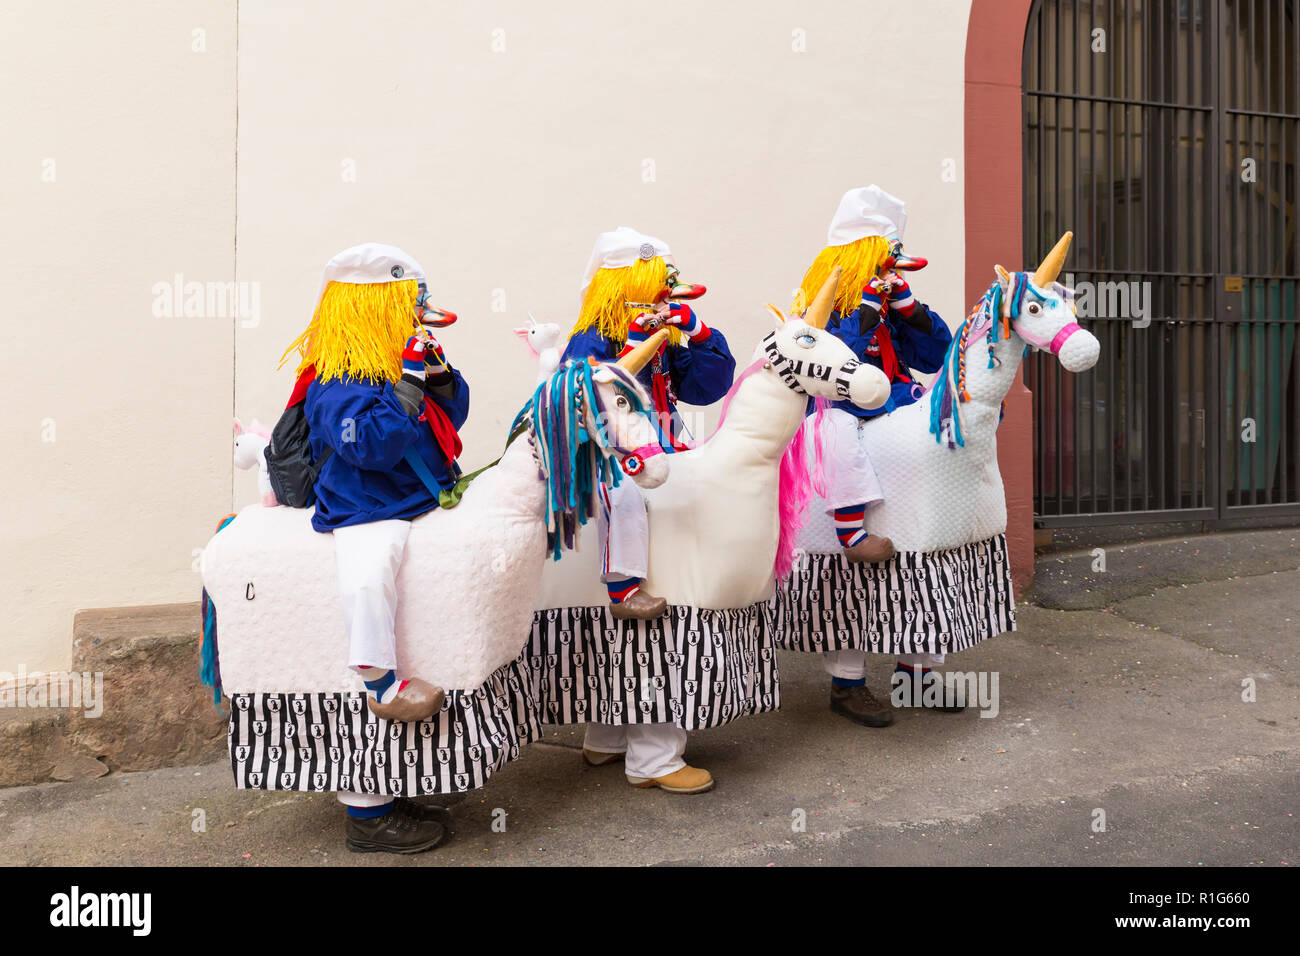 Basler Fasnacht. Schluesselberg, Basel, Schweiz - Februar 21., 2018.  Portrait von drei Teilnehmern in süßen Einhorn Kostüme Stockfotografie -  Alamy